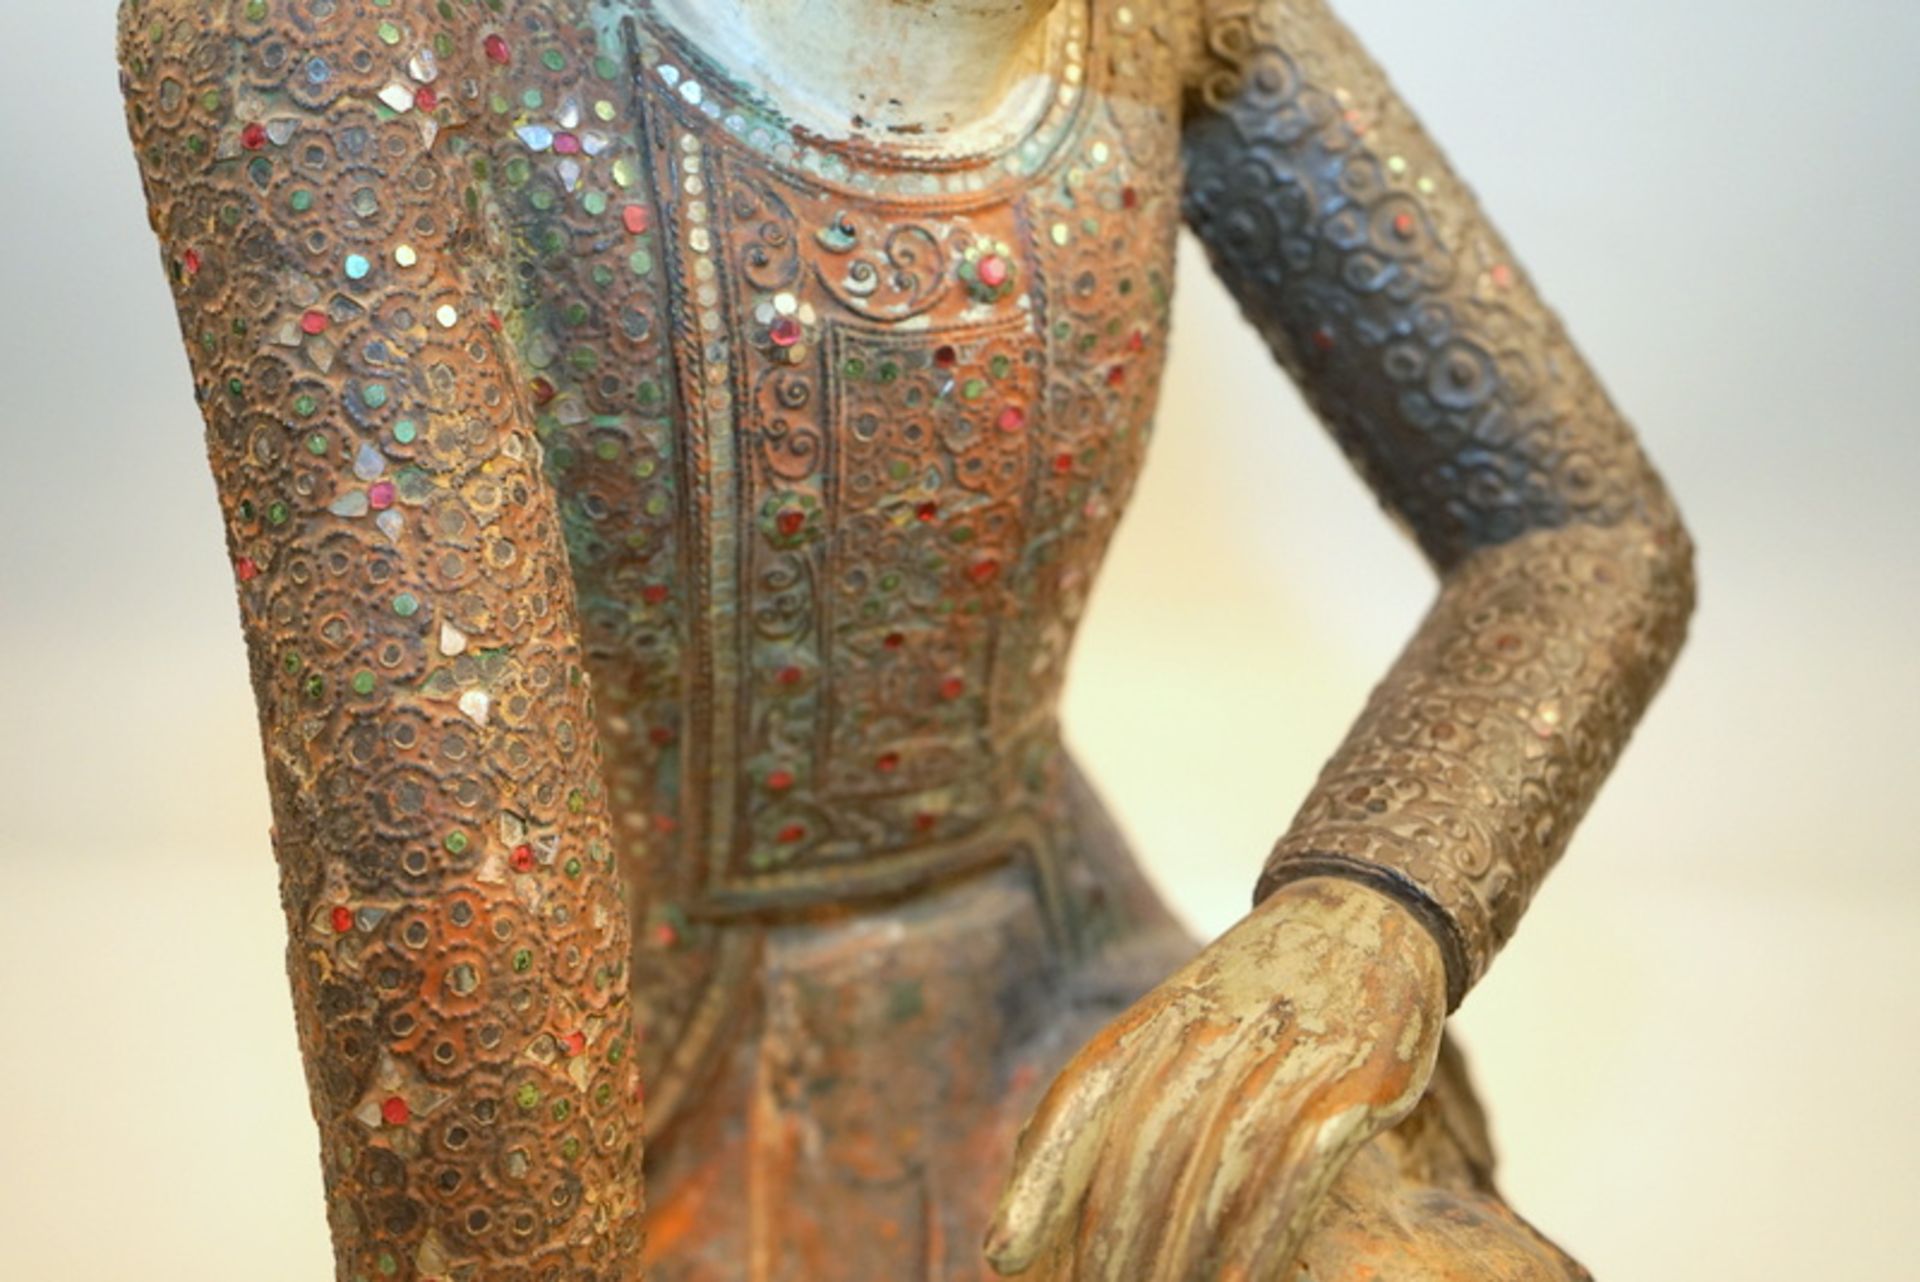 Burmesische Stifterfigur,Holz geschnitz gefasst, das Oberteil mit aufwendigem Glasbesatz, junger - Image 3 of 5